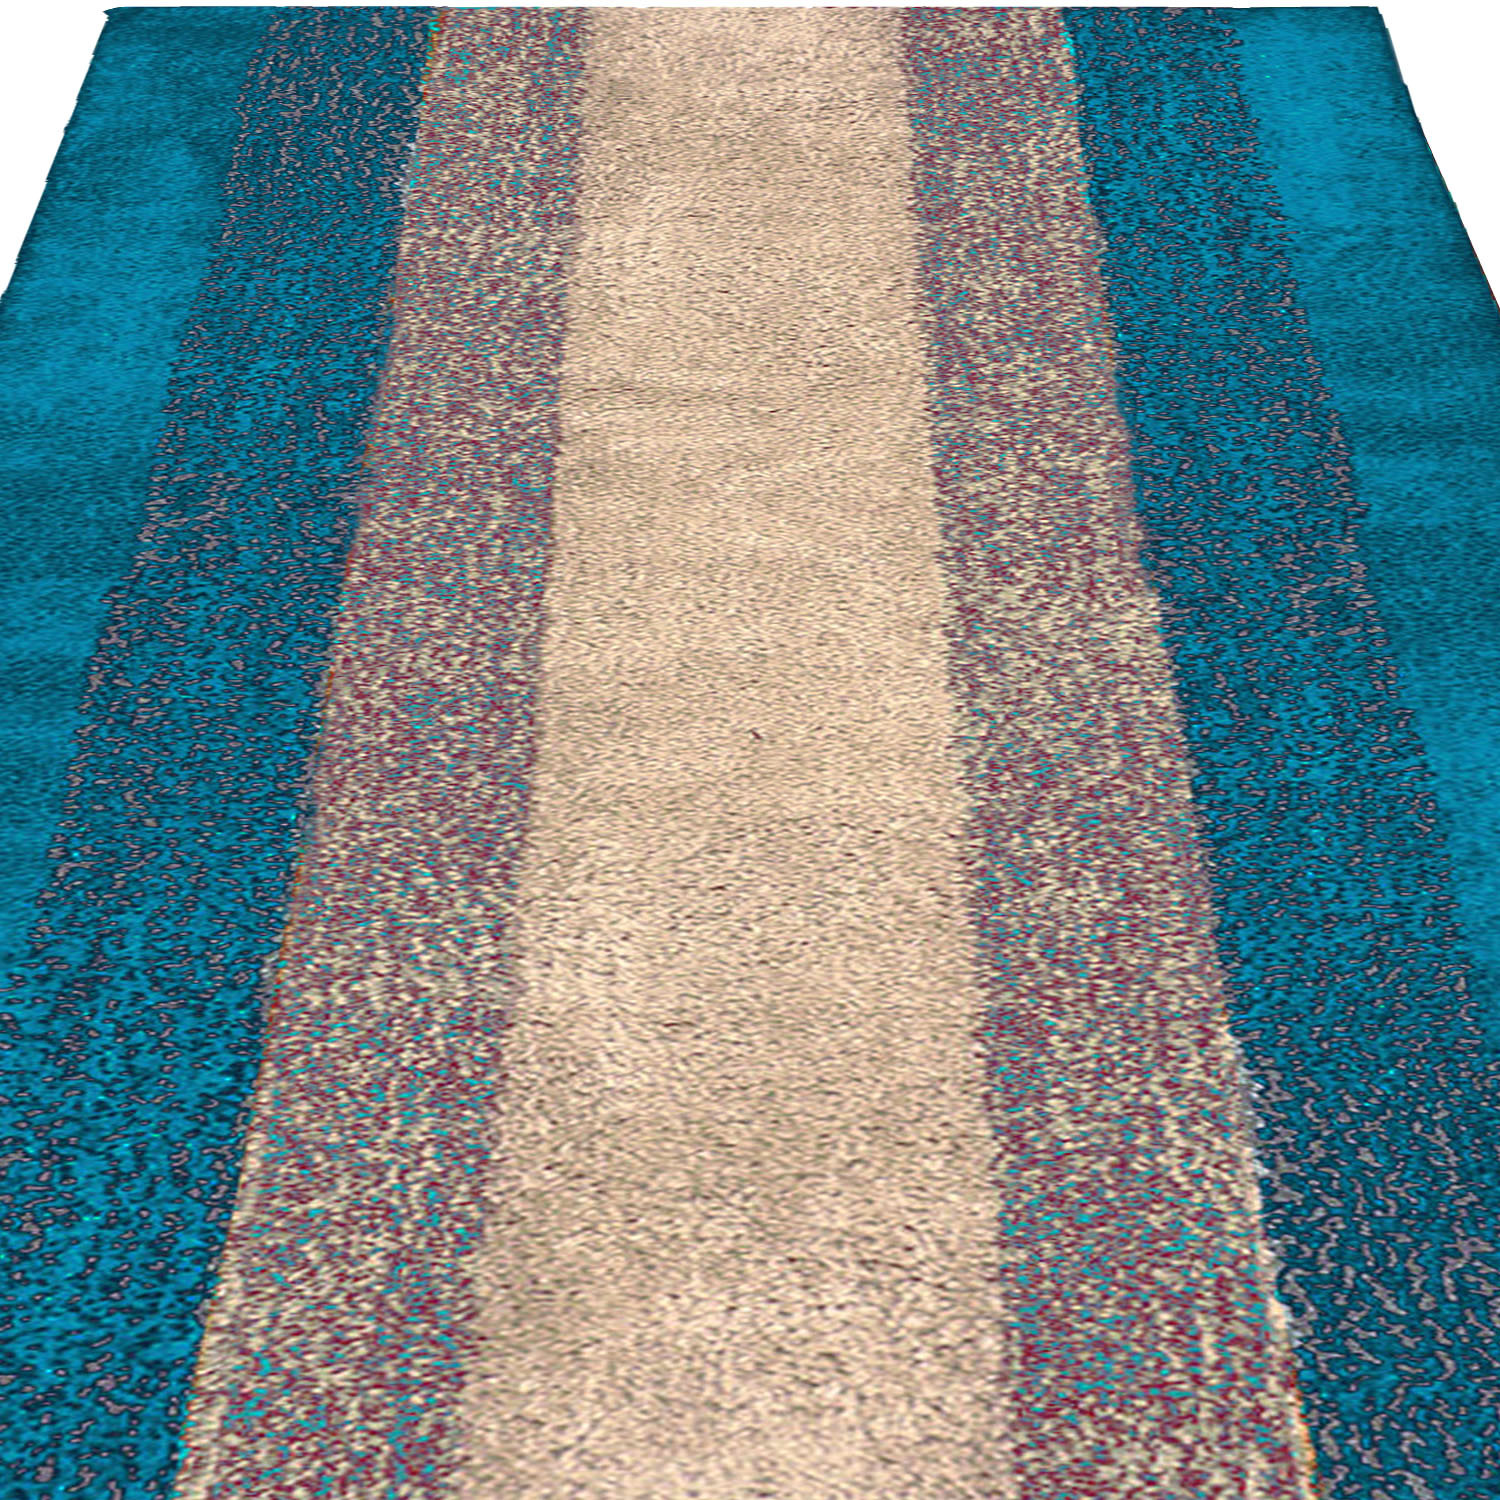 Kuber Industries Soft Shaggy Door Mat|Super Absorbent Cotton Floor Mat For Shoe Scraper & Indoor And Outdoor (Green)